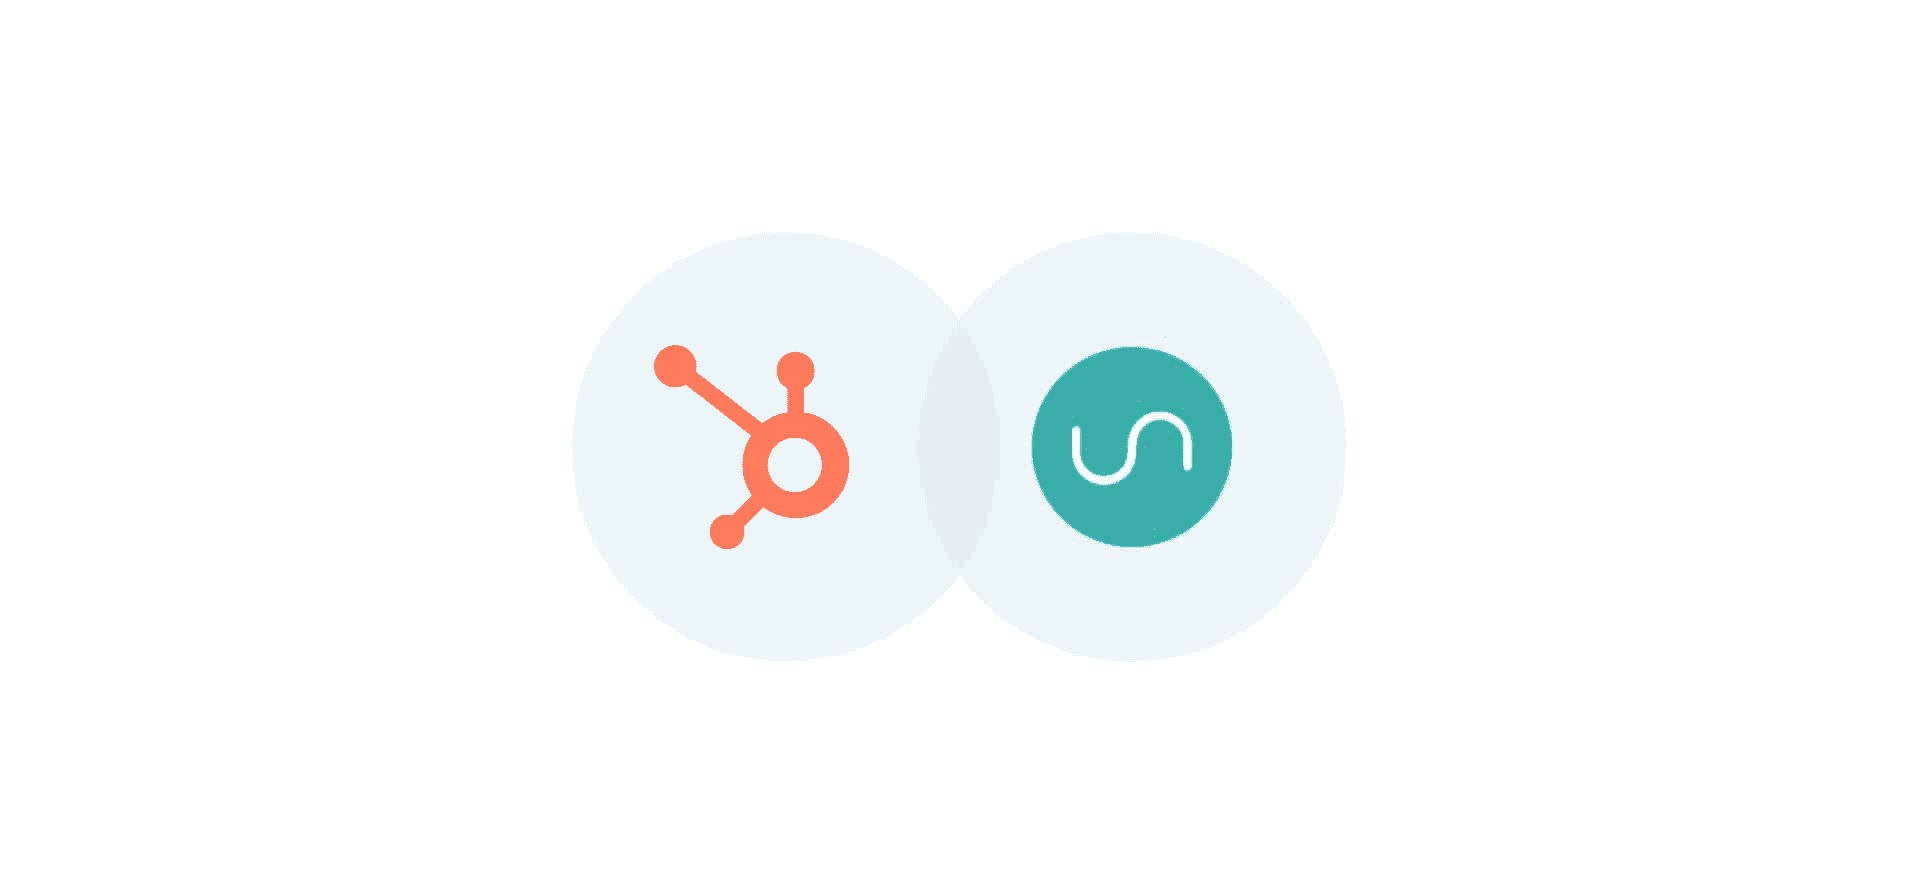 Logos for HubSpot and Unito, representing Unito's HubSpot integration